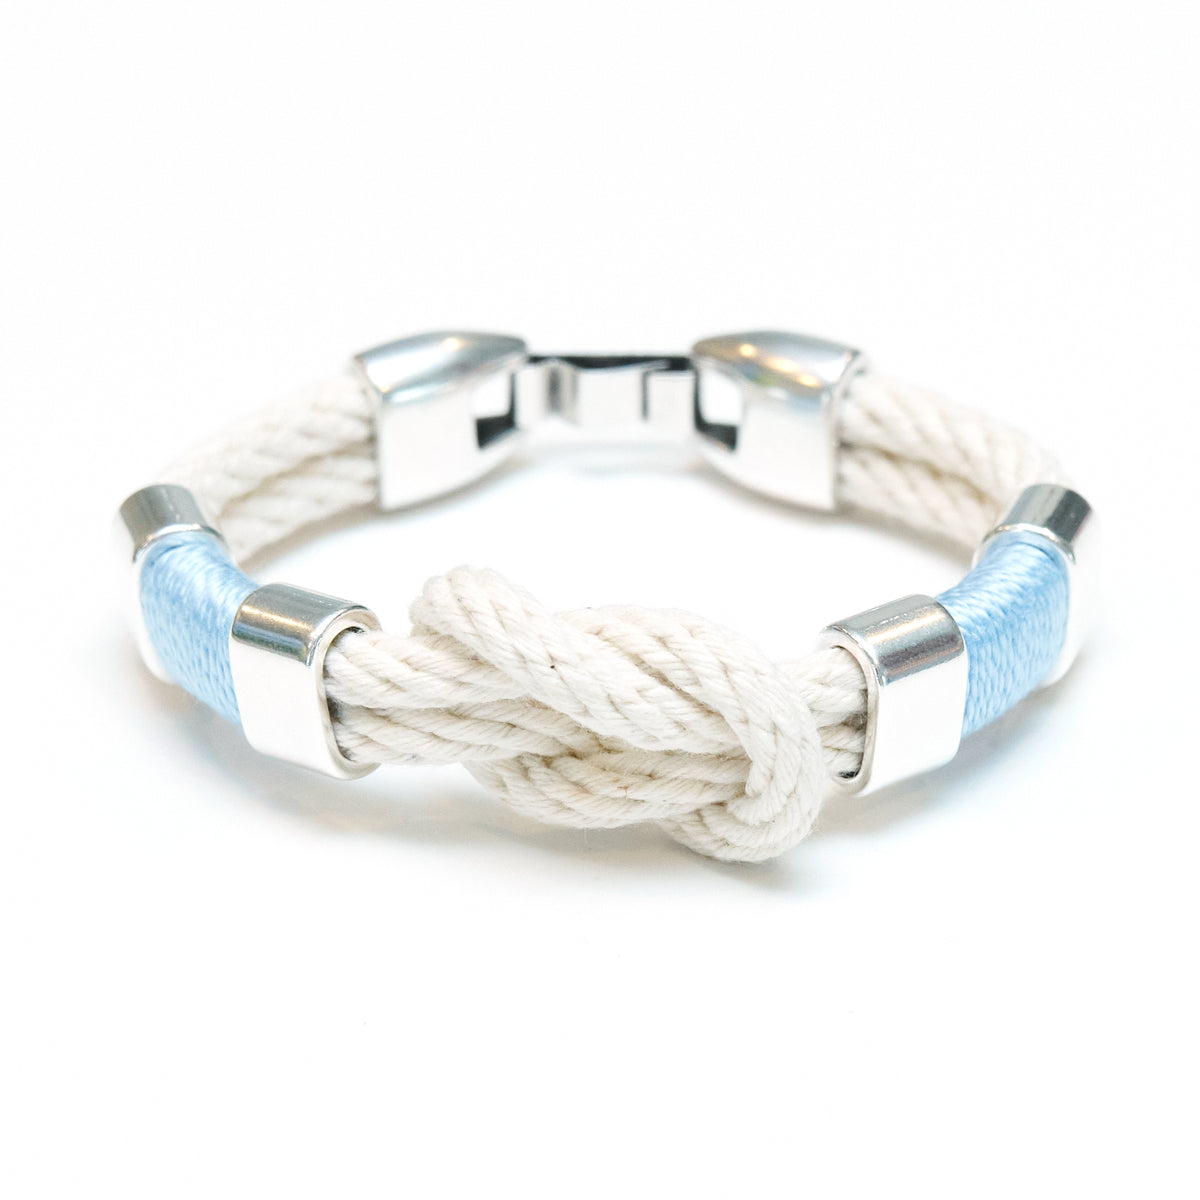 Allison Cole Jewelry - Starboard Bracelet - Ivory/ Light Blue/ Silver